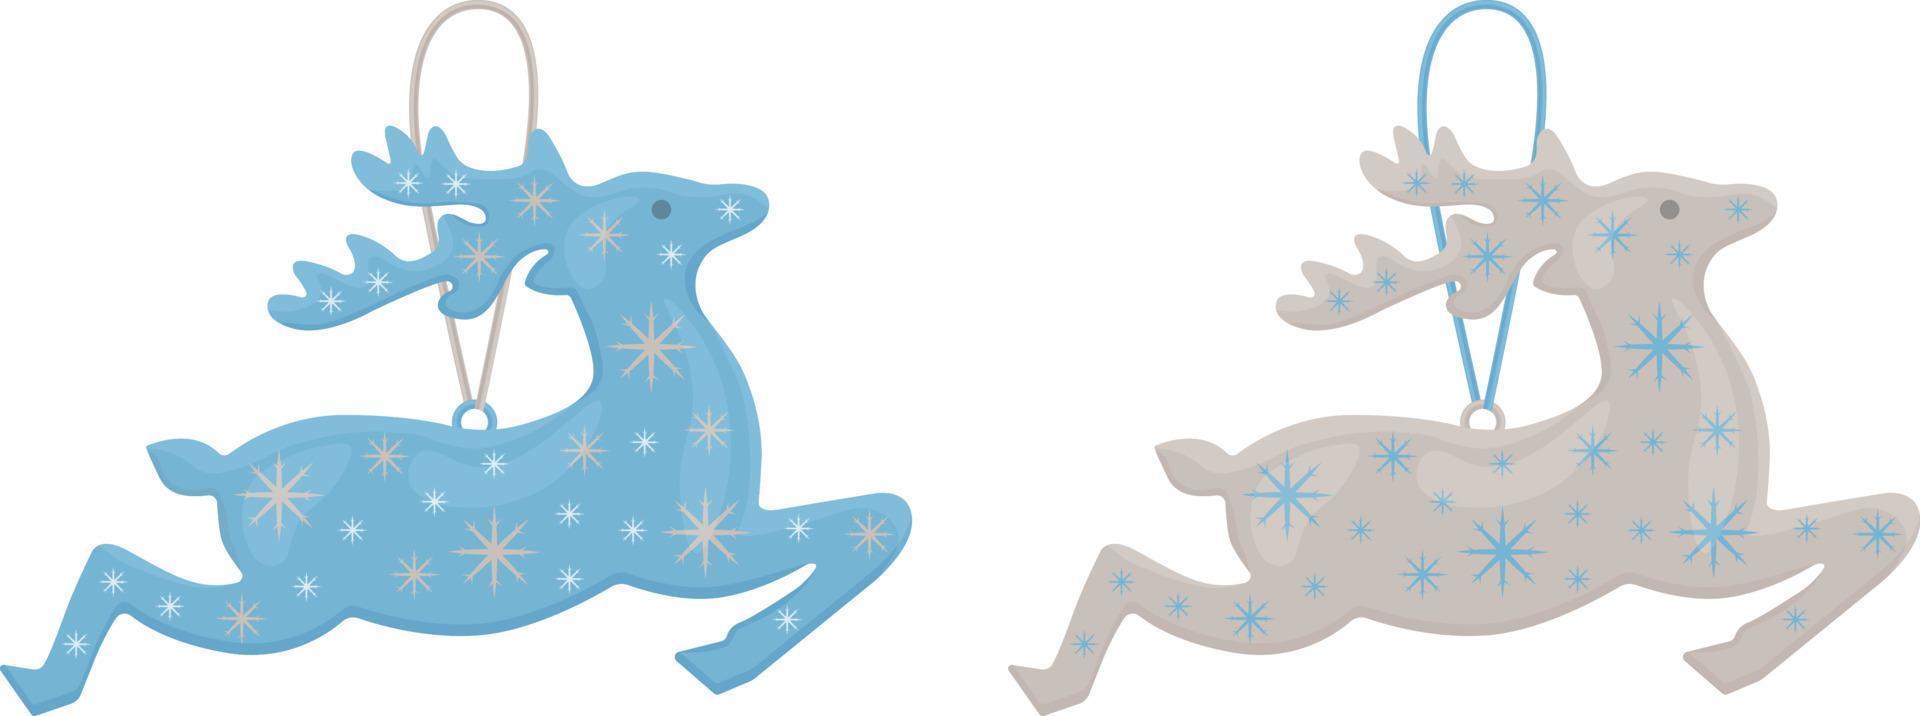 rena do papai noel. brinquedos de árvore de natal brilhantes em forma de rena de papai noel. brinquedos de natal nas cores azul e prata. um acessório de ano novo. ilustração vetorial em um fundo branco vetor